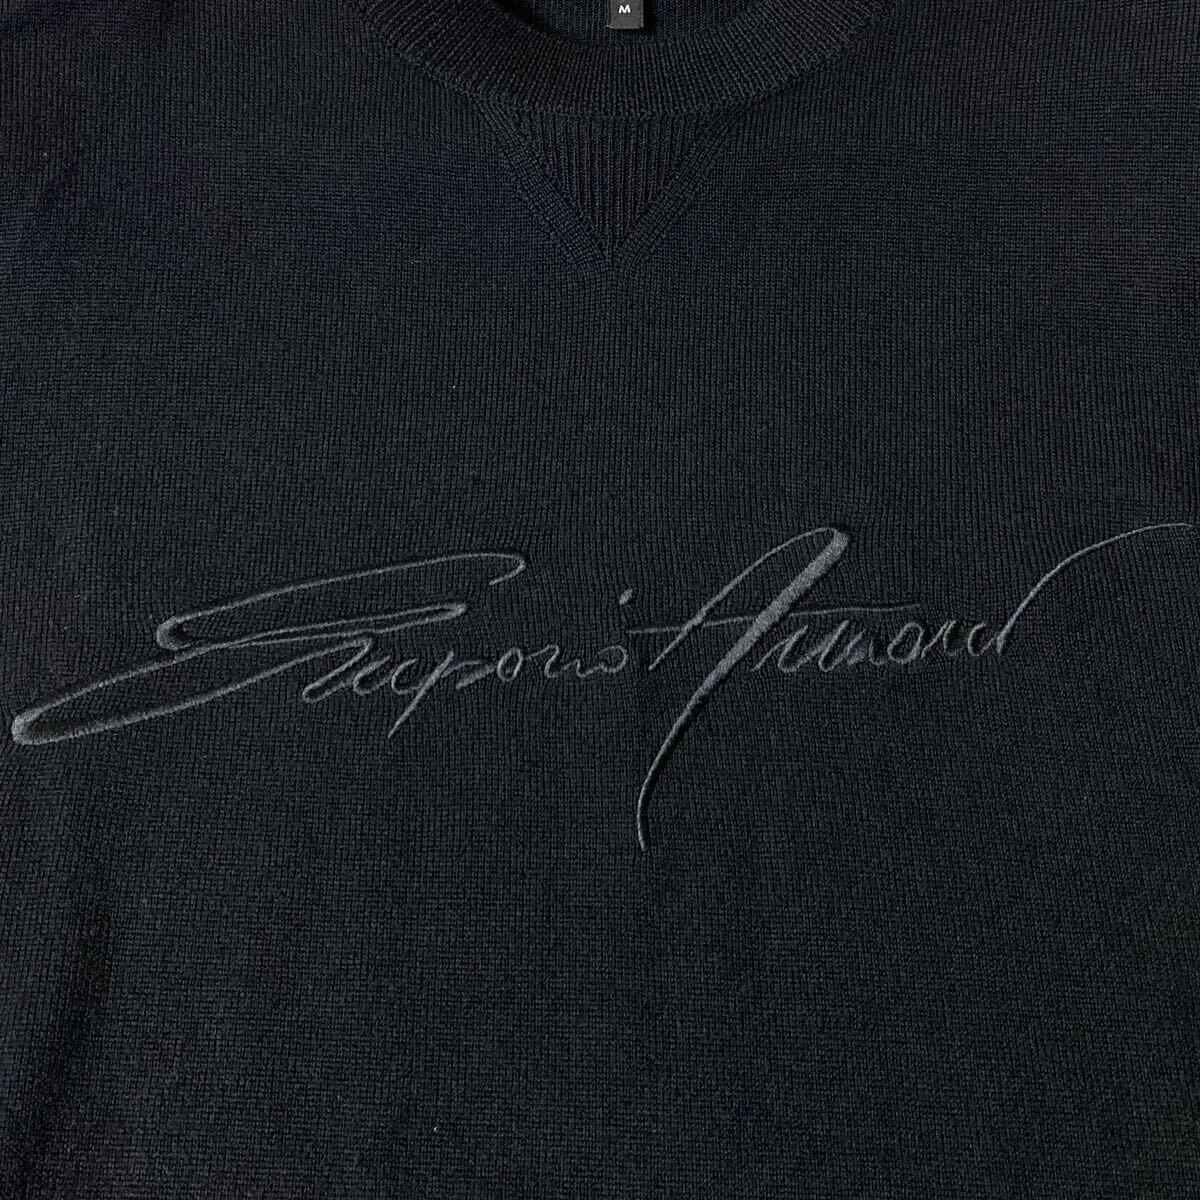 エンポリオアルマーニ EMPORIO ARMANI 筆記体ロゴ刺繍 ニット セーター クルーネック Mサイズ ブラック 黒 メンズ_画像3